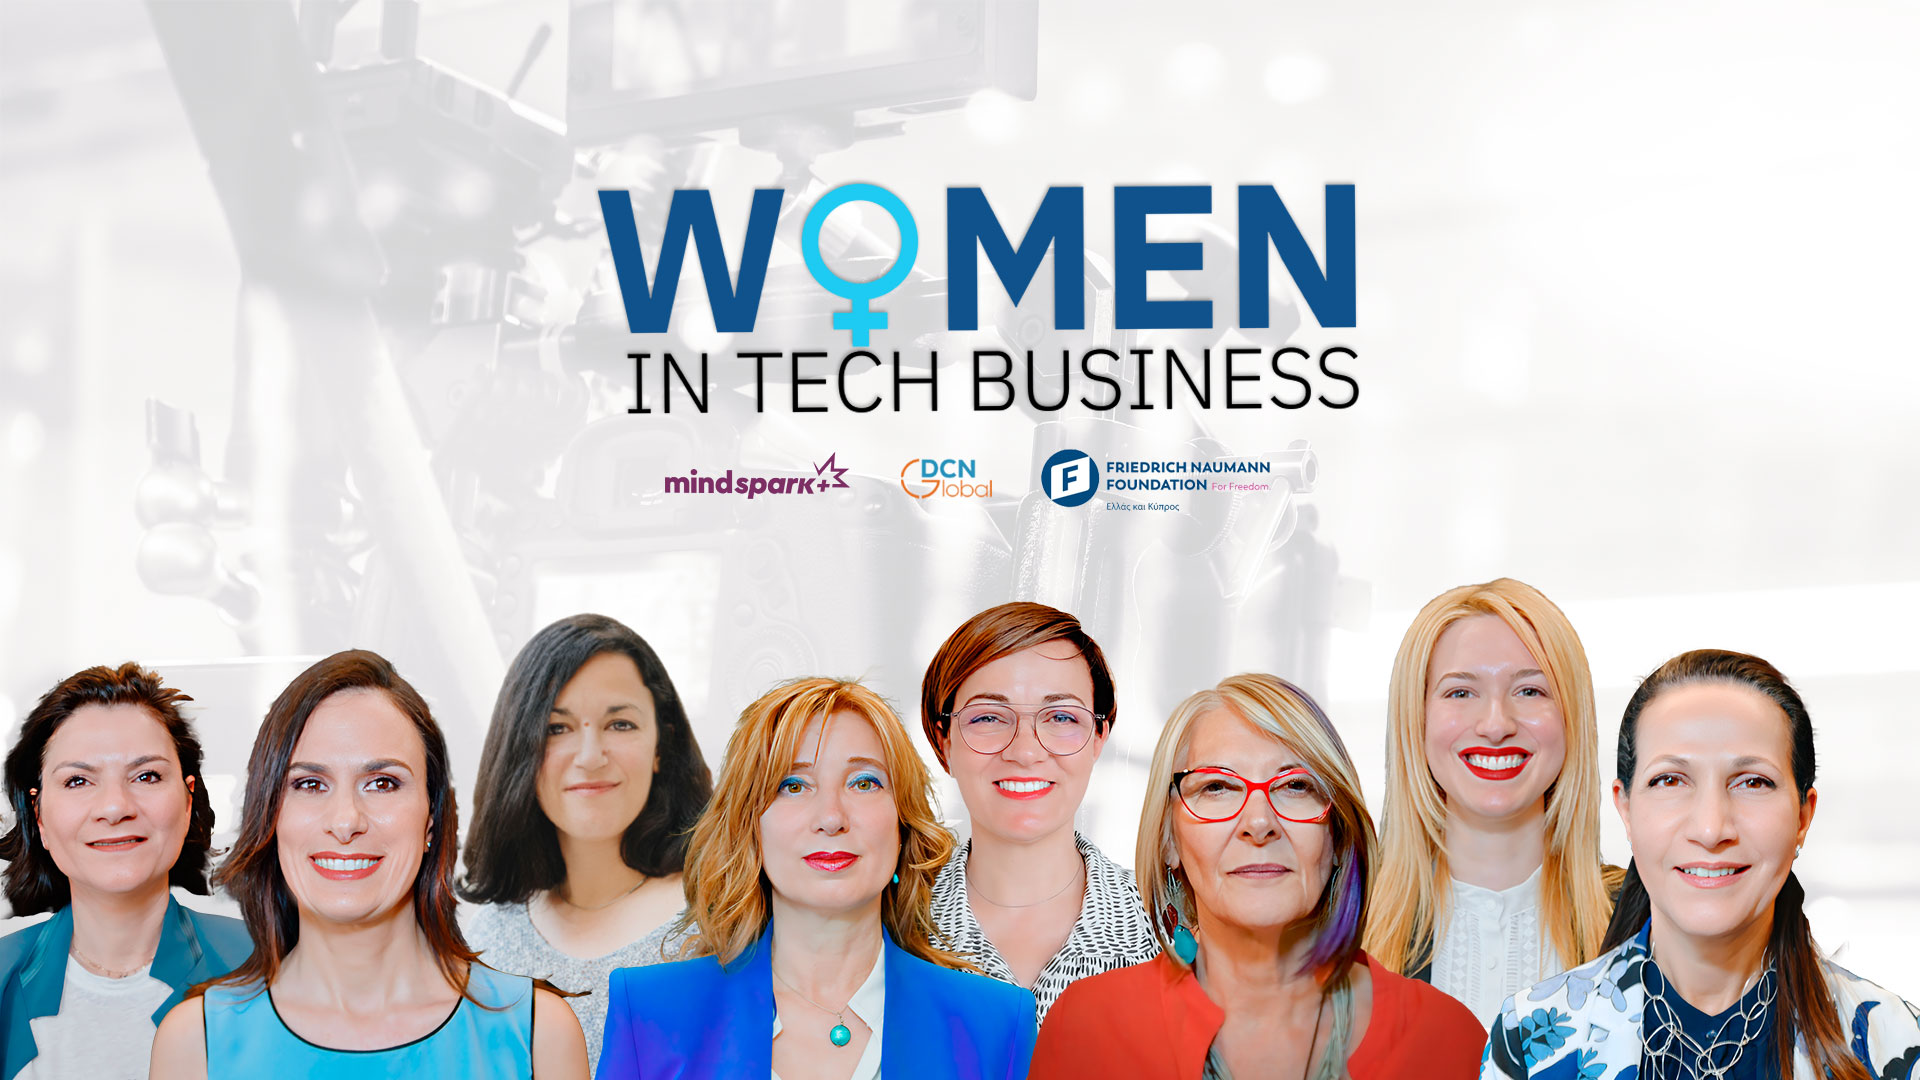 «Women in Tech Business”: Μια σειρά συνεντεύξεων από γυναίκες προς όλες τις γυναίκες.